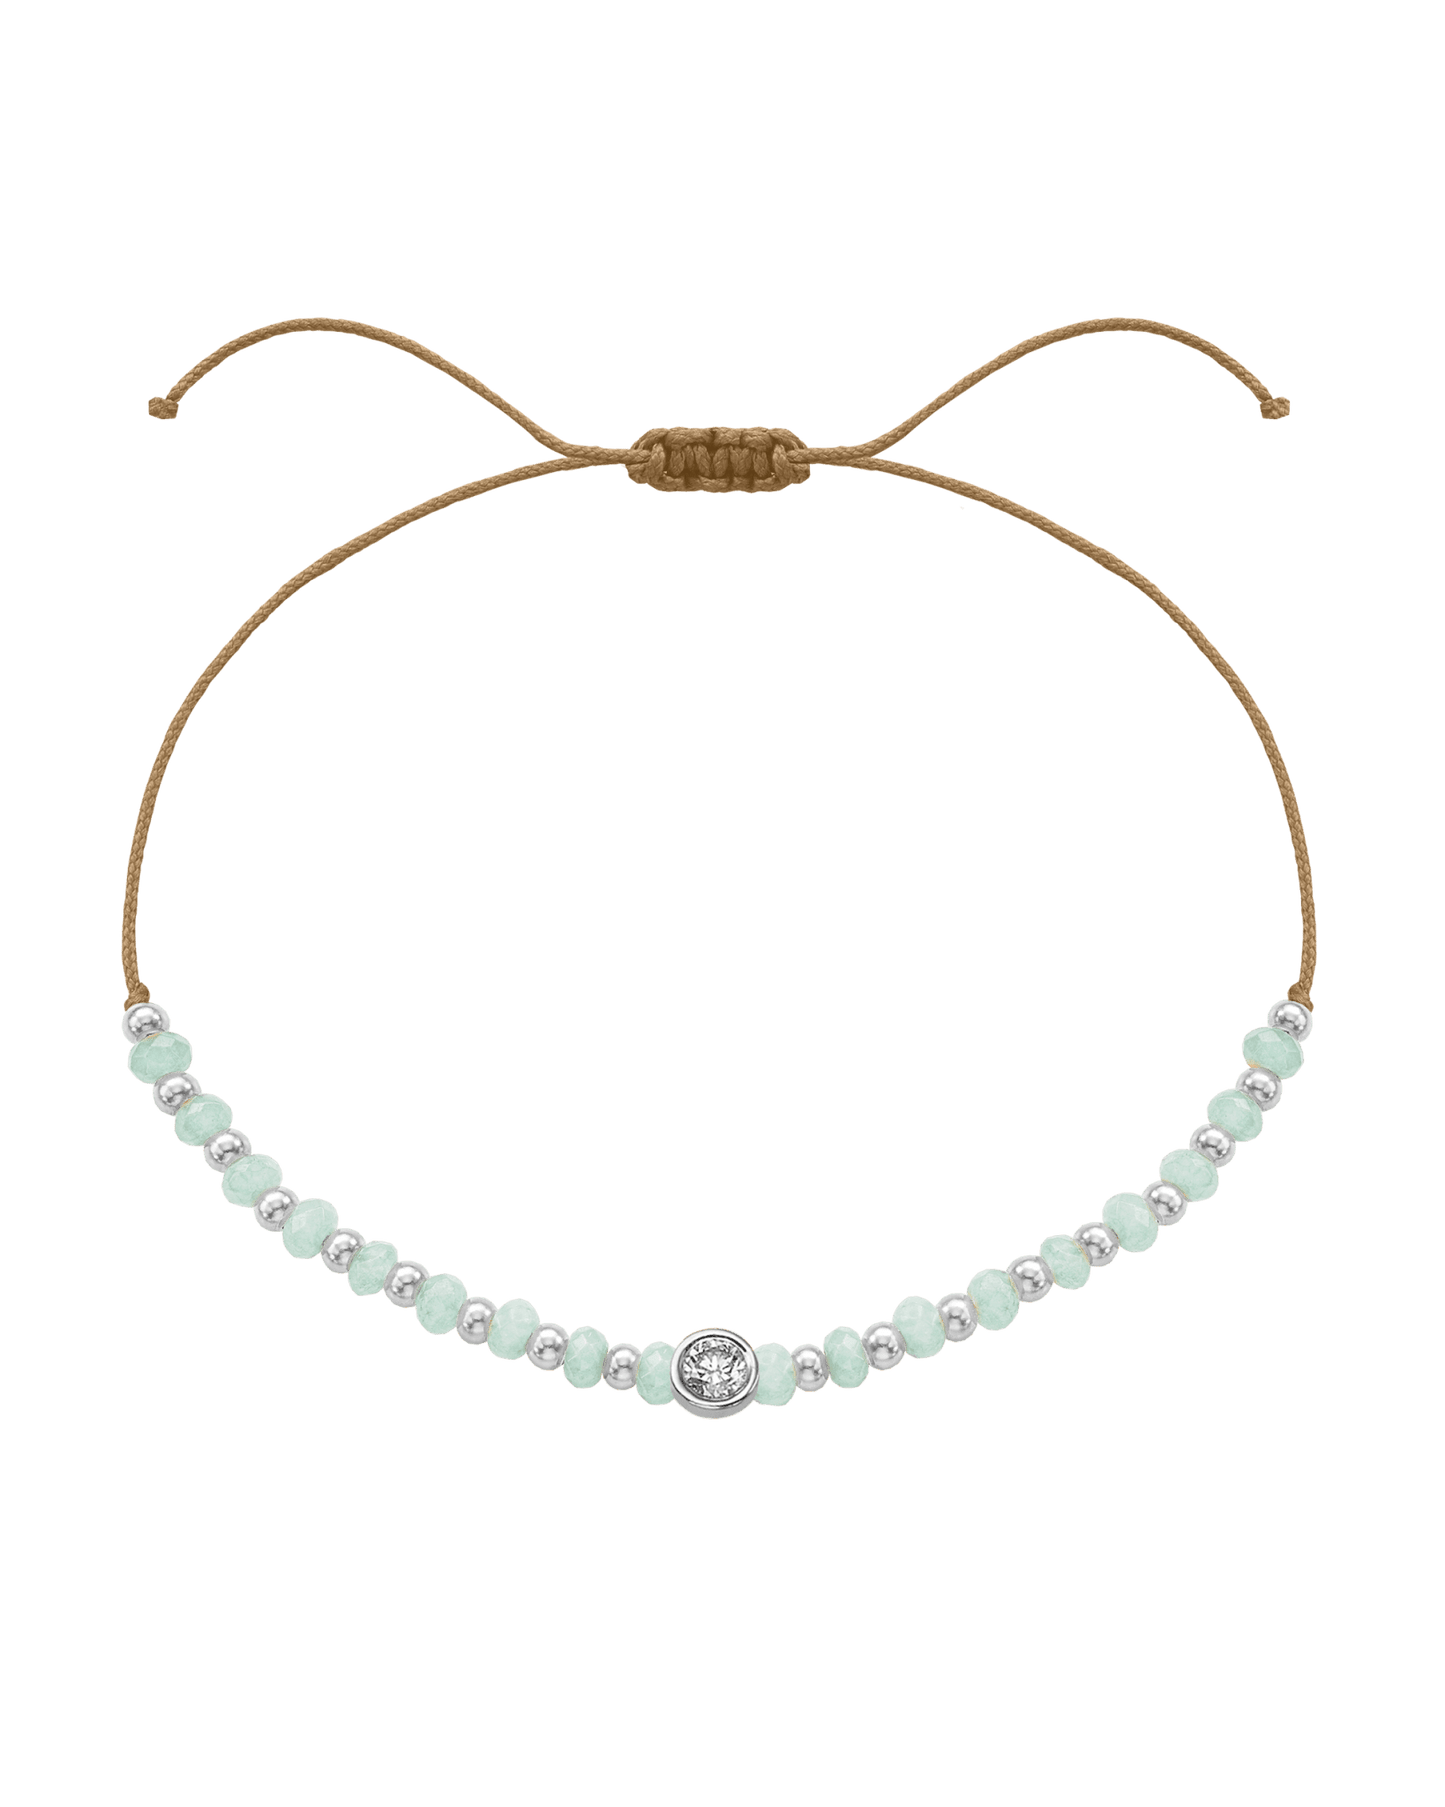 Apatite Gemstone String of Love Bracelet for Inspiration - 14K White Gold Bracelets 14K Solid Gold Camel Large: 0.1ct 